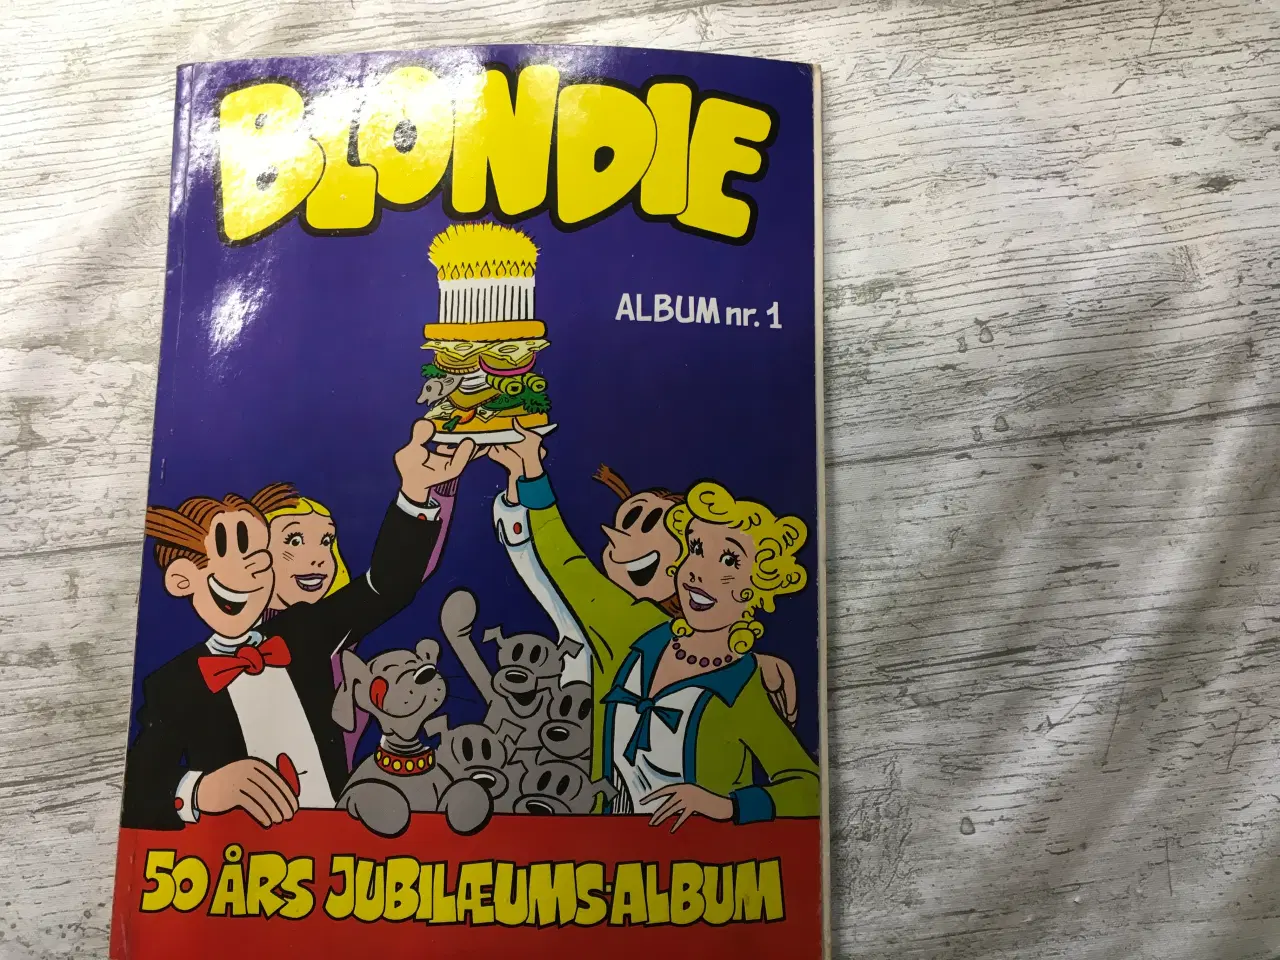 Billede 1 - Blondie album nr. 1